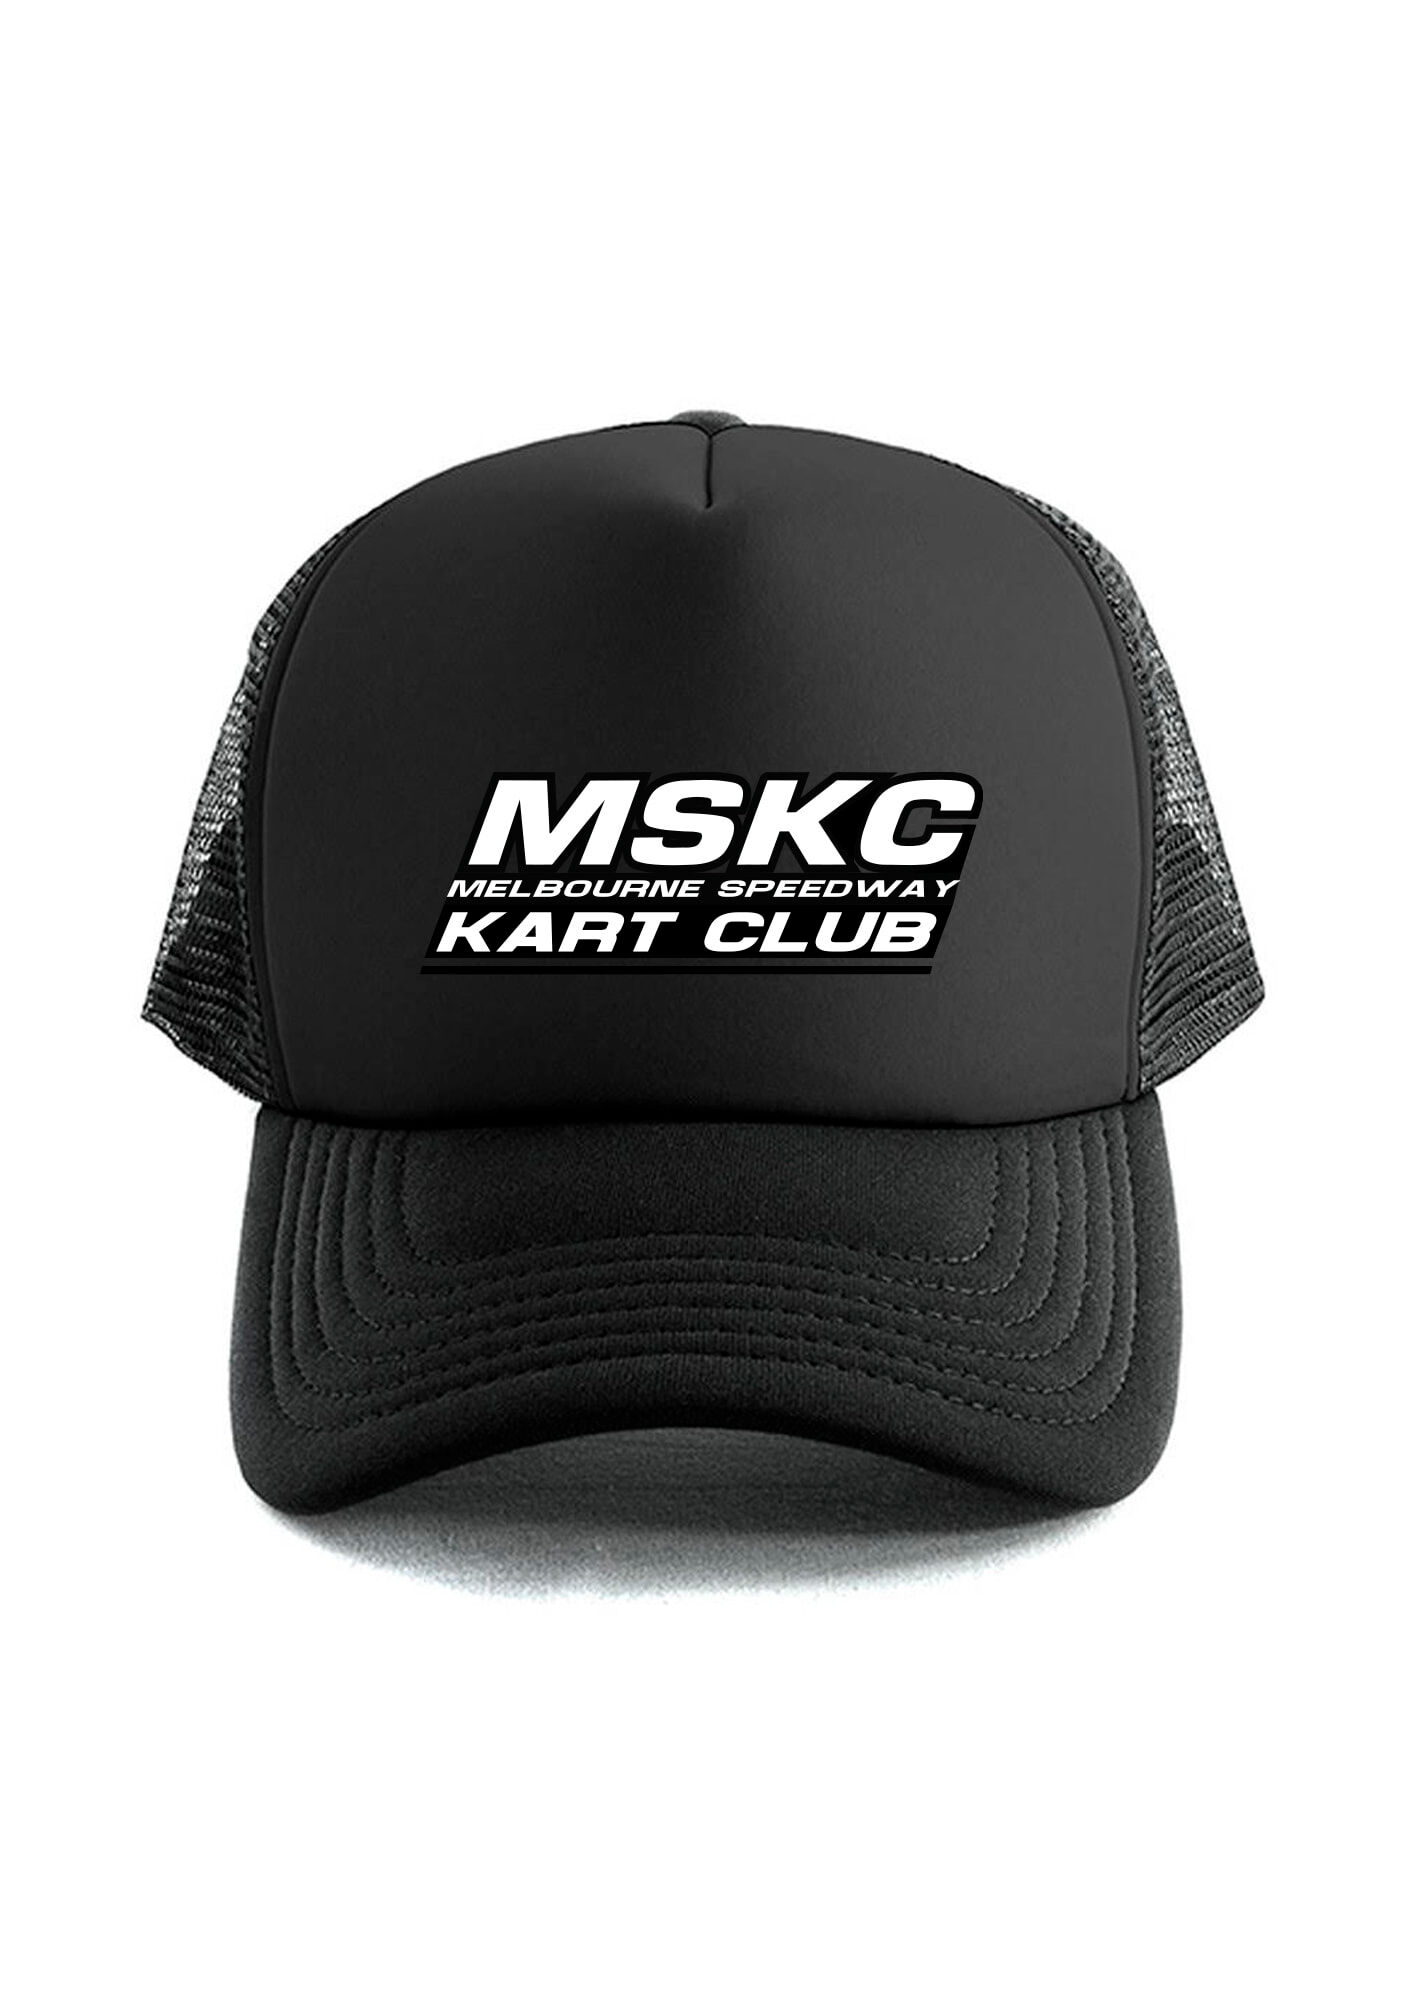 MSKC hat